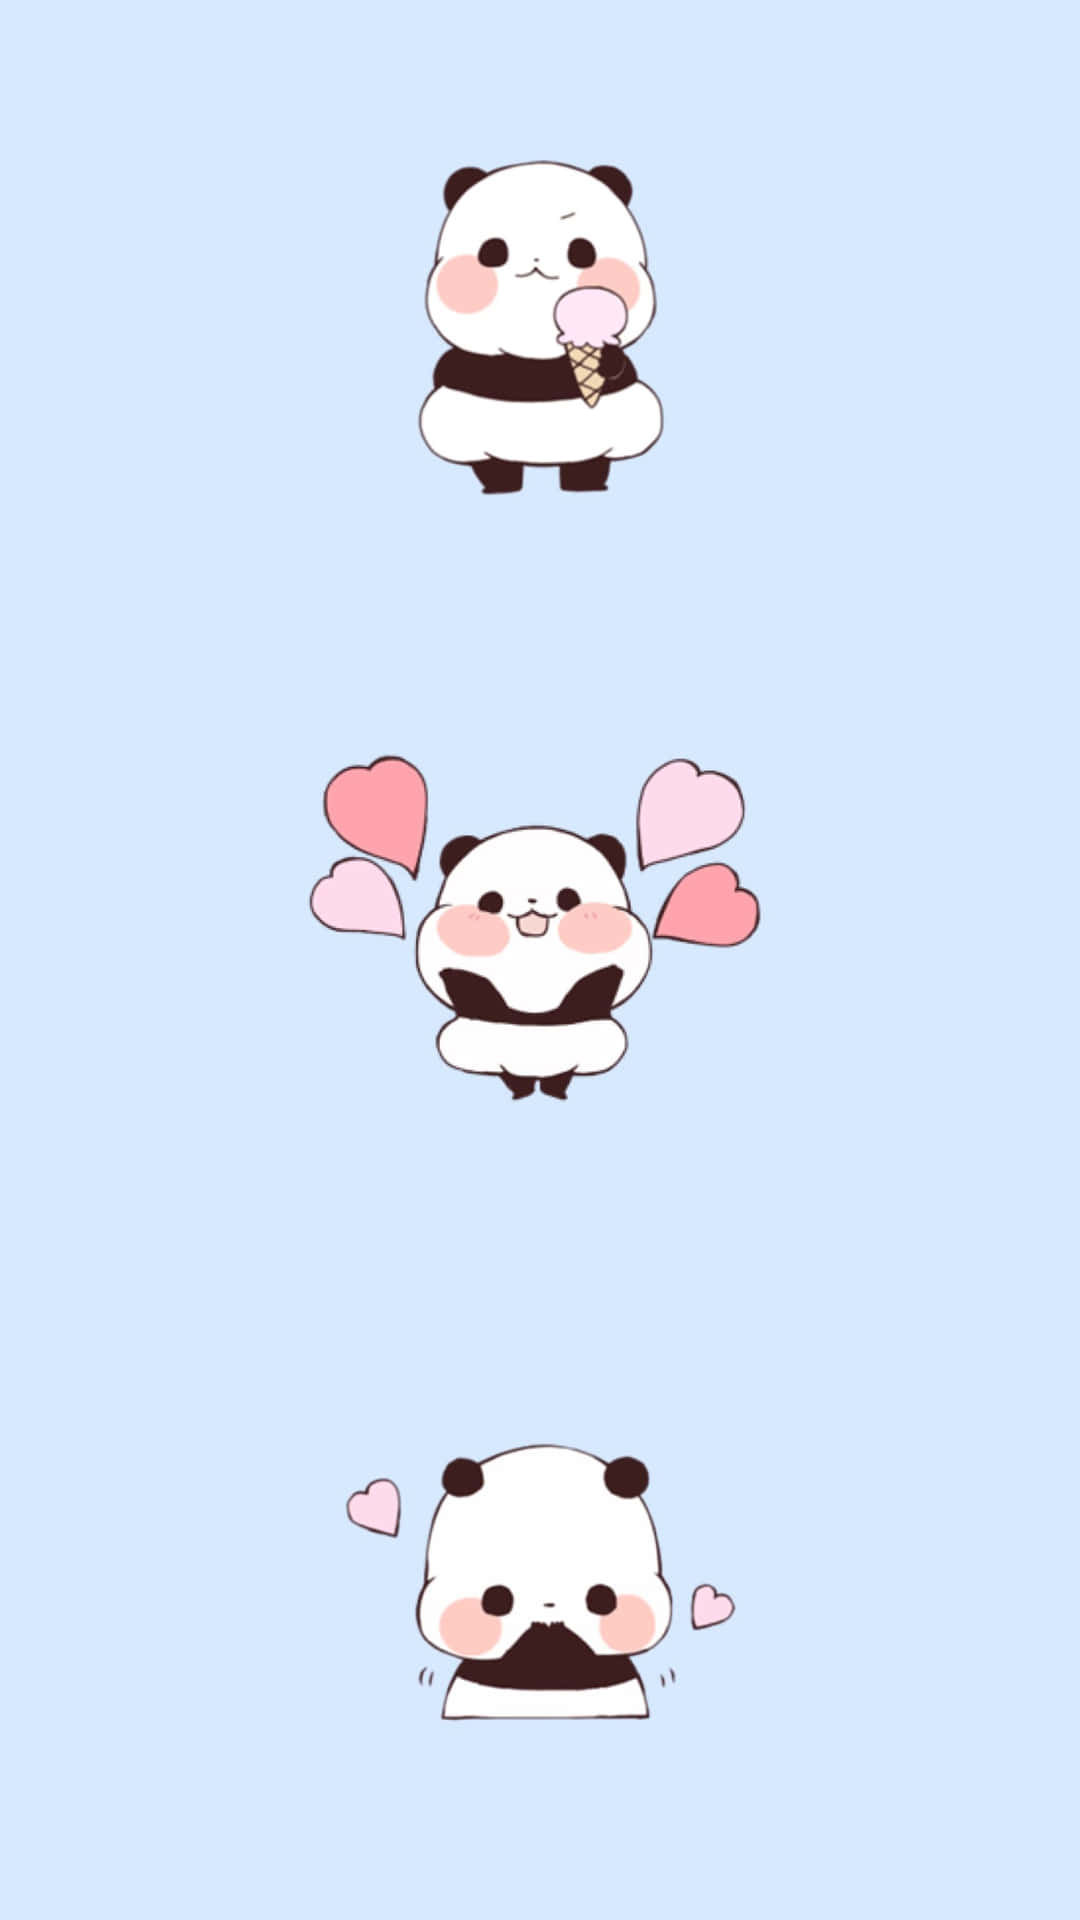 Cute Cartoon Panda Love Wallpaper